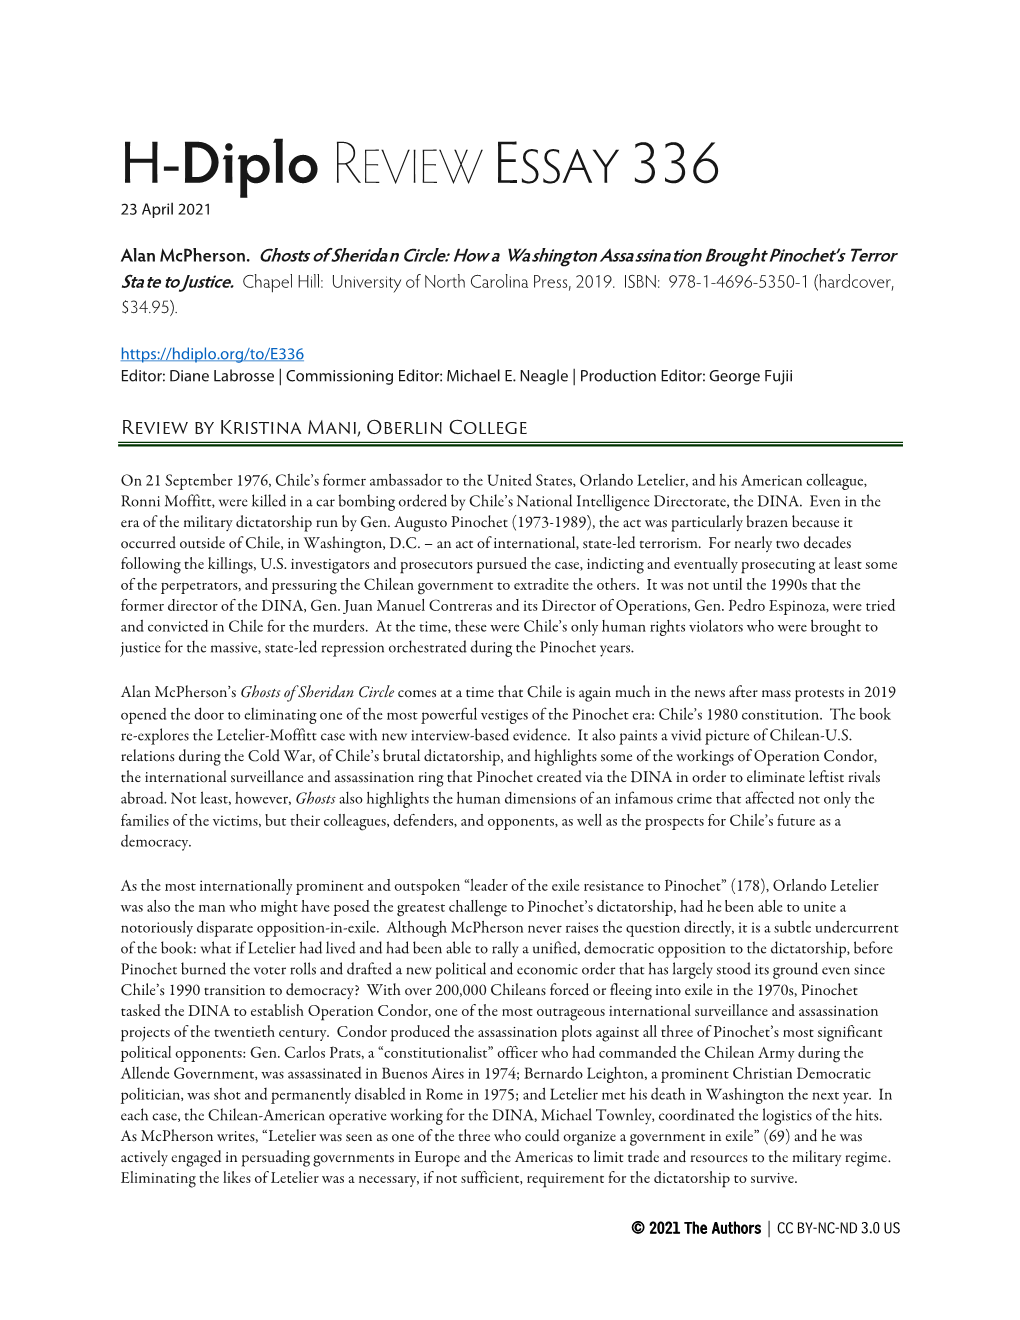 H-Diplo REVIEW ESSAY 336 23 April 2021